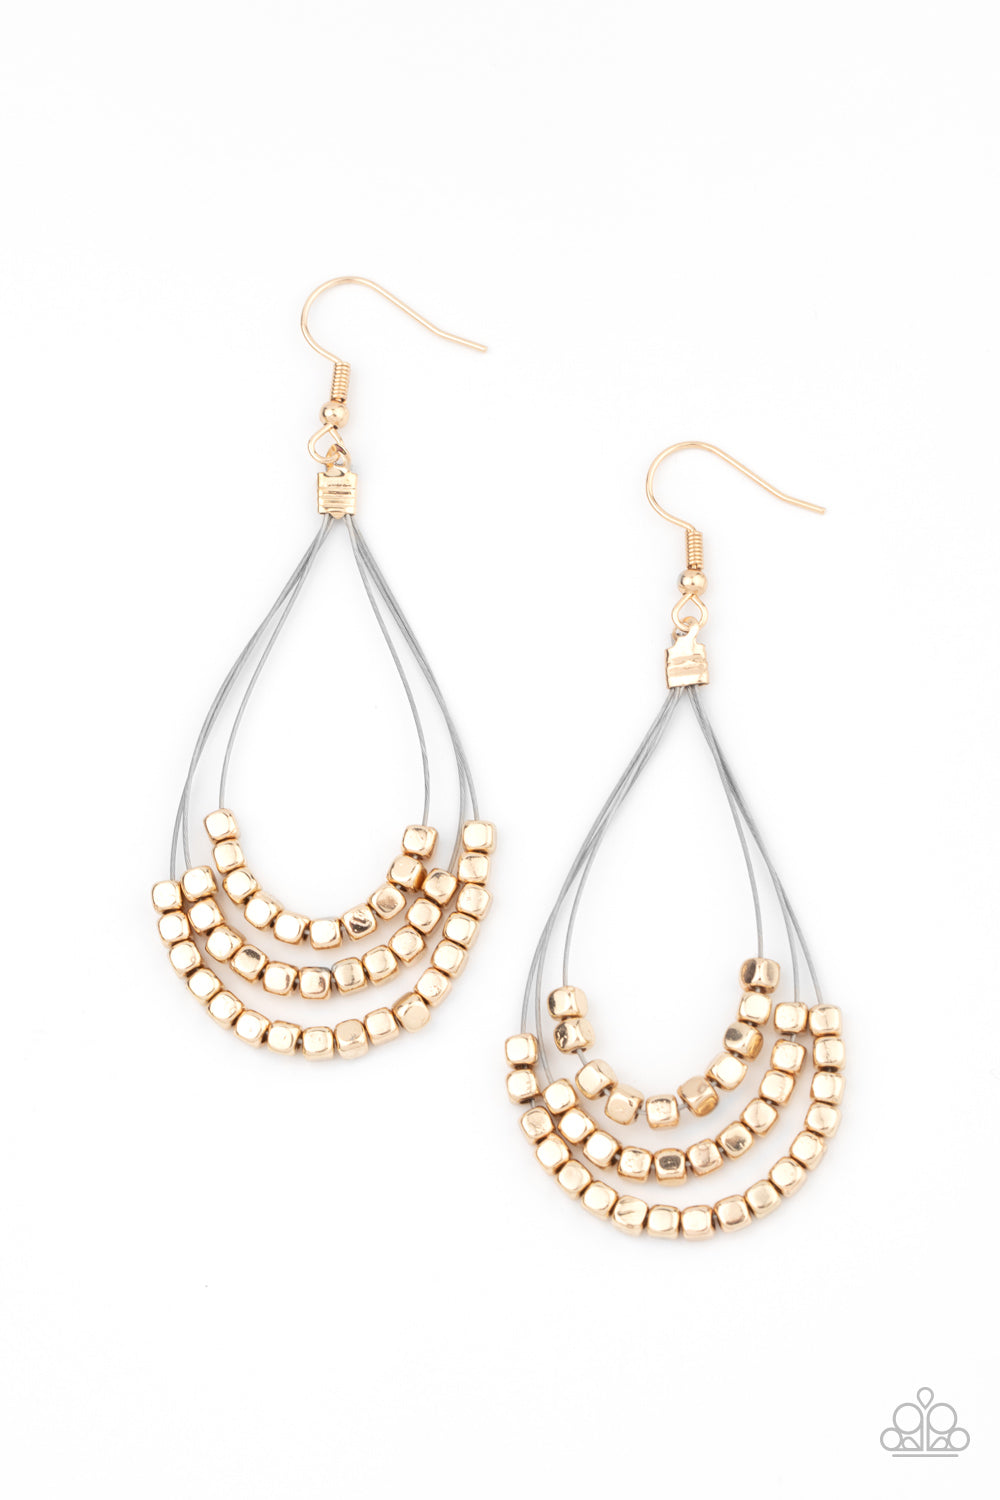 Off The Blocks Shimmer Gold Earrings - Daria's Blings N Things